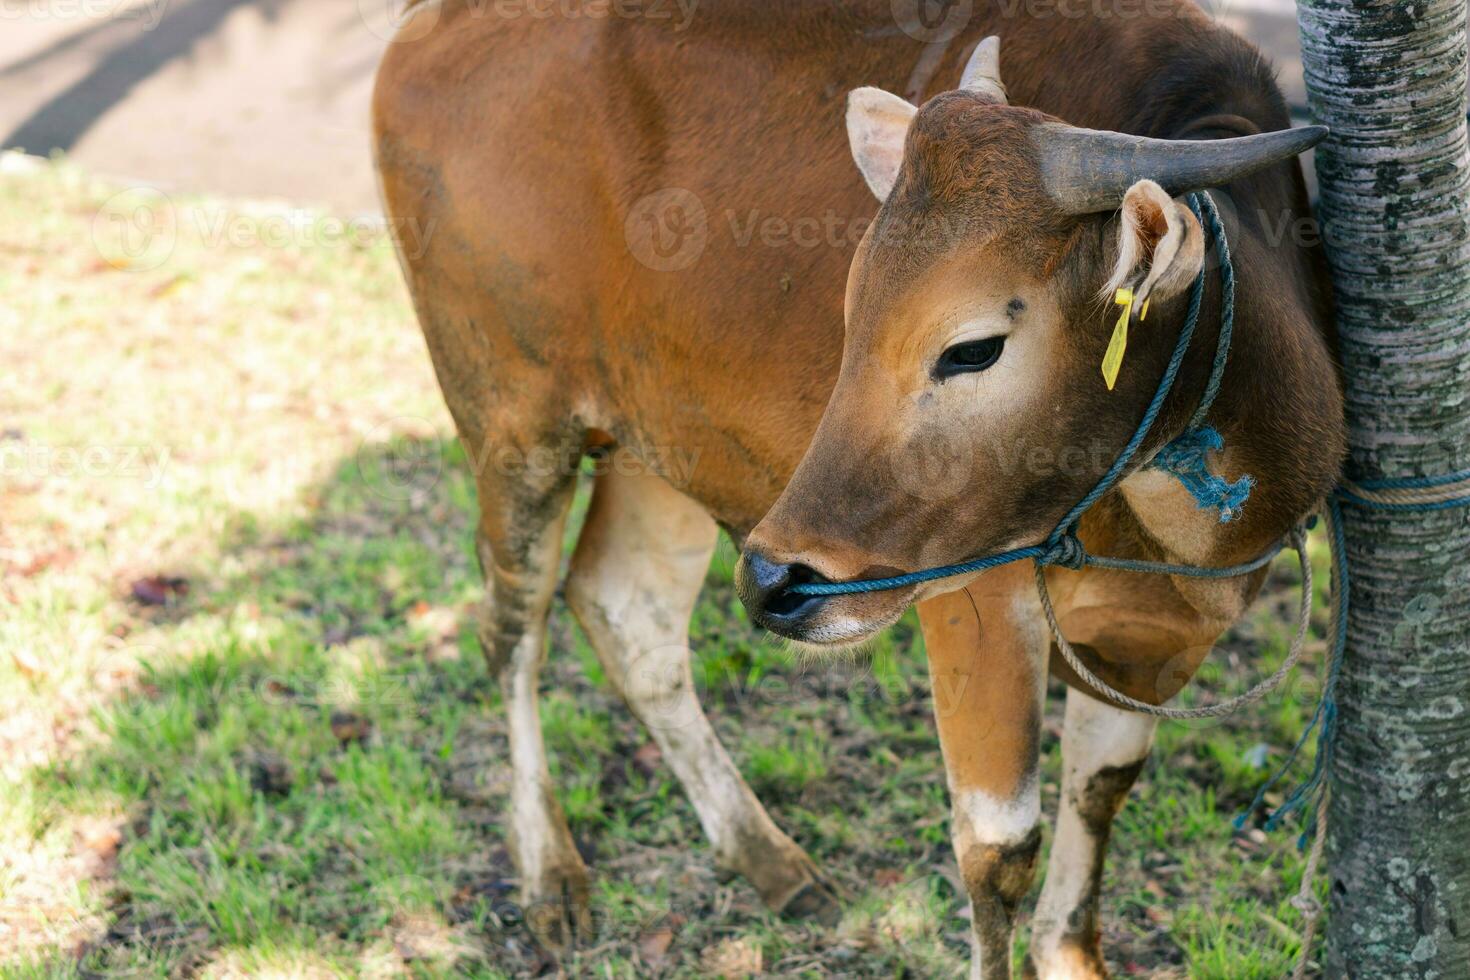 bruin koe voor korban of offer festival moslim evenement in dorp met groen gras foto